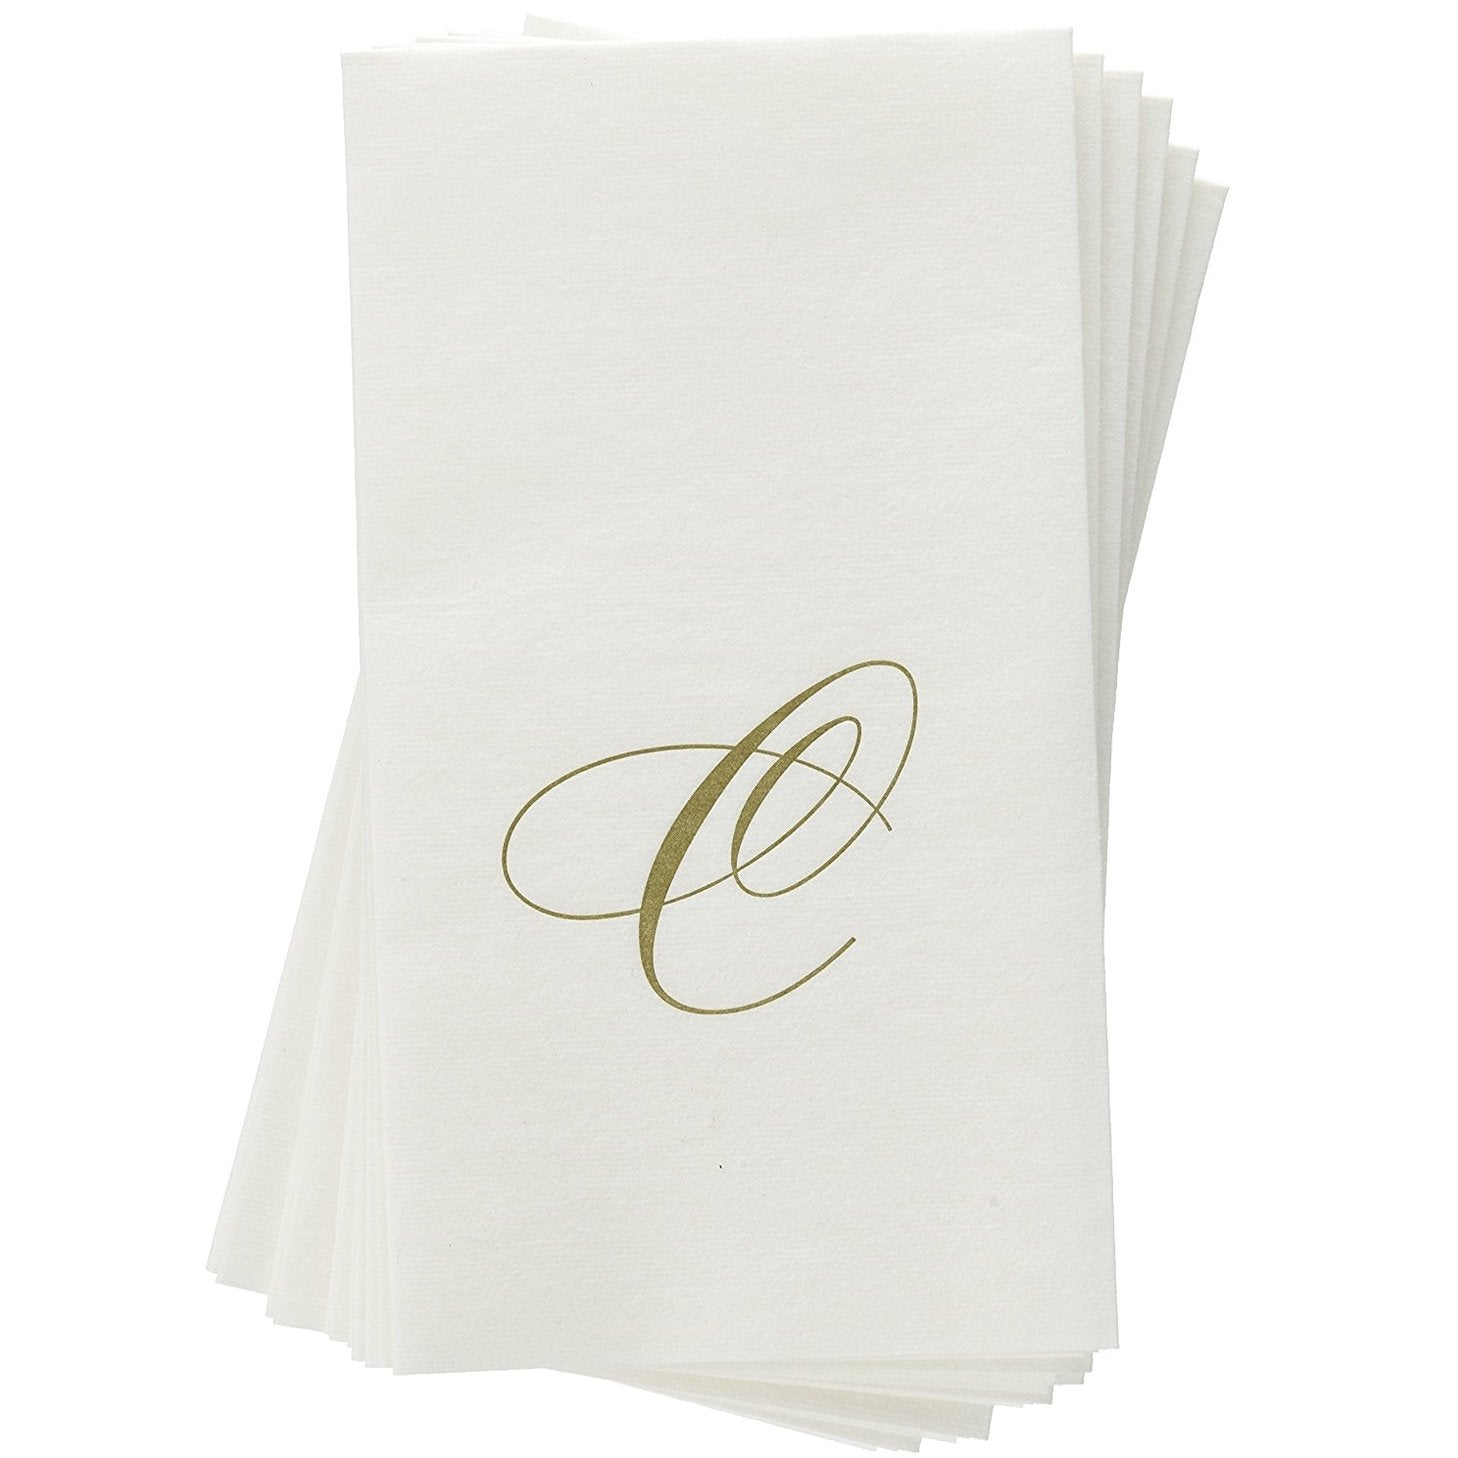 Monogram Paper Guest Towels